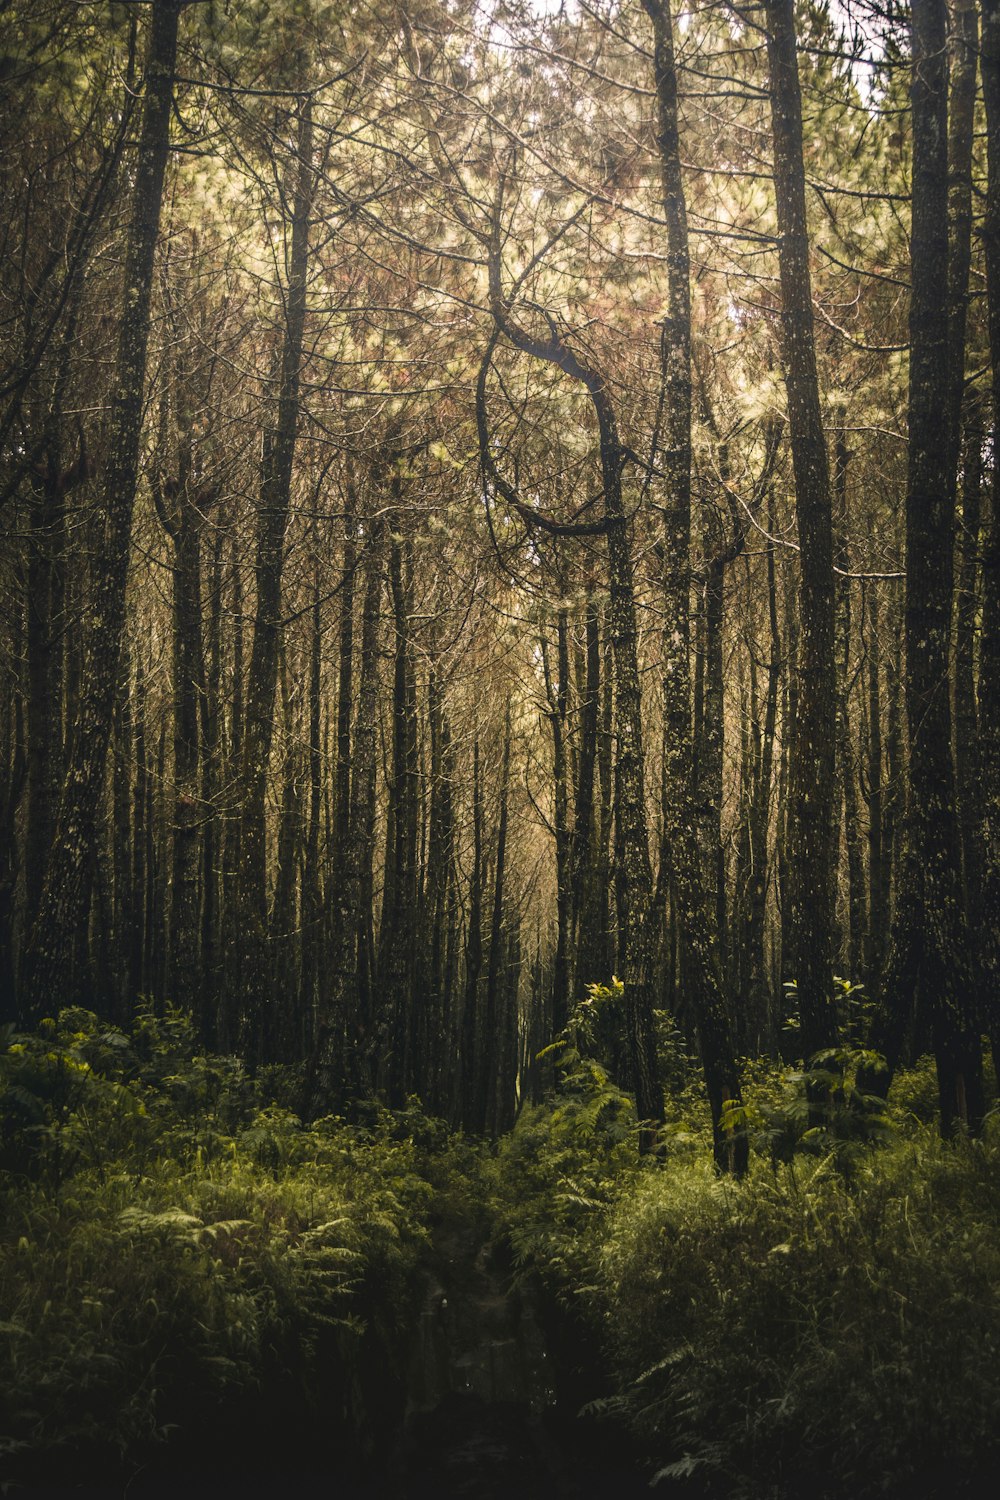 Bosque lleno de árboles